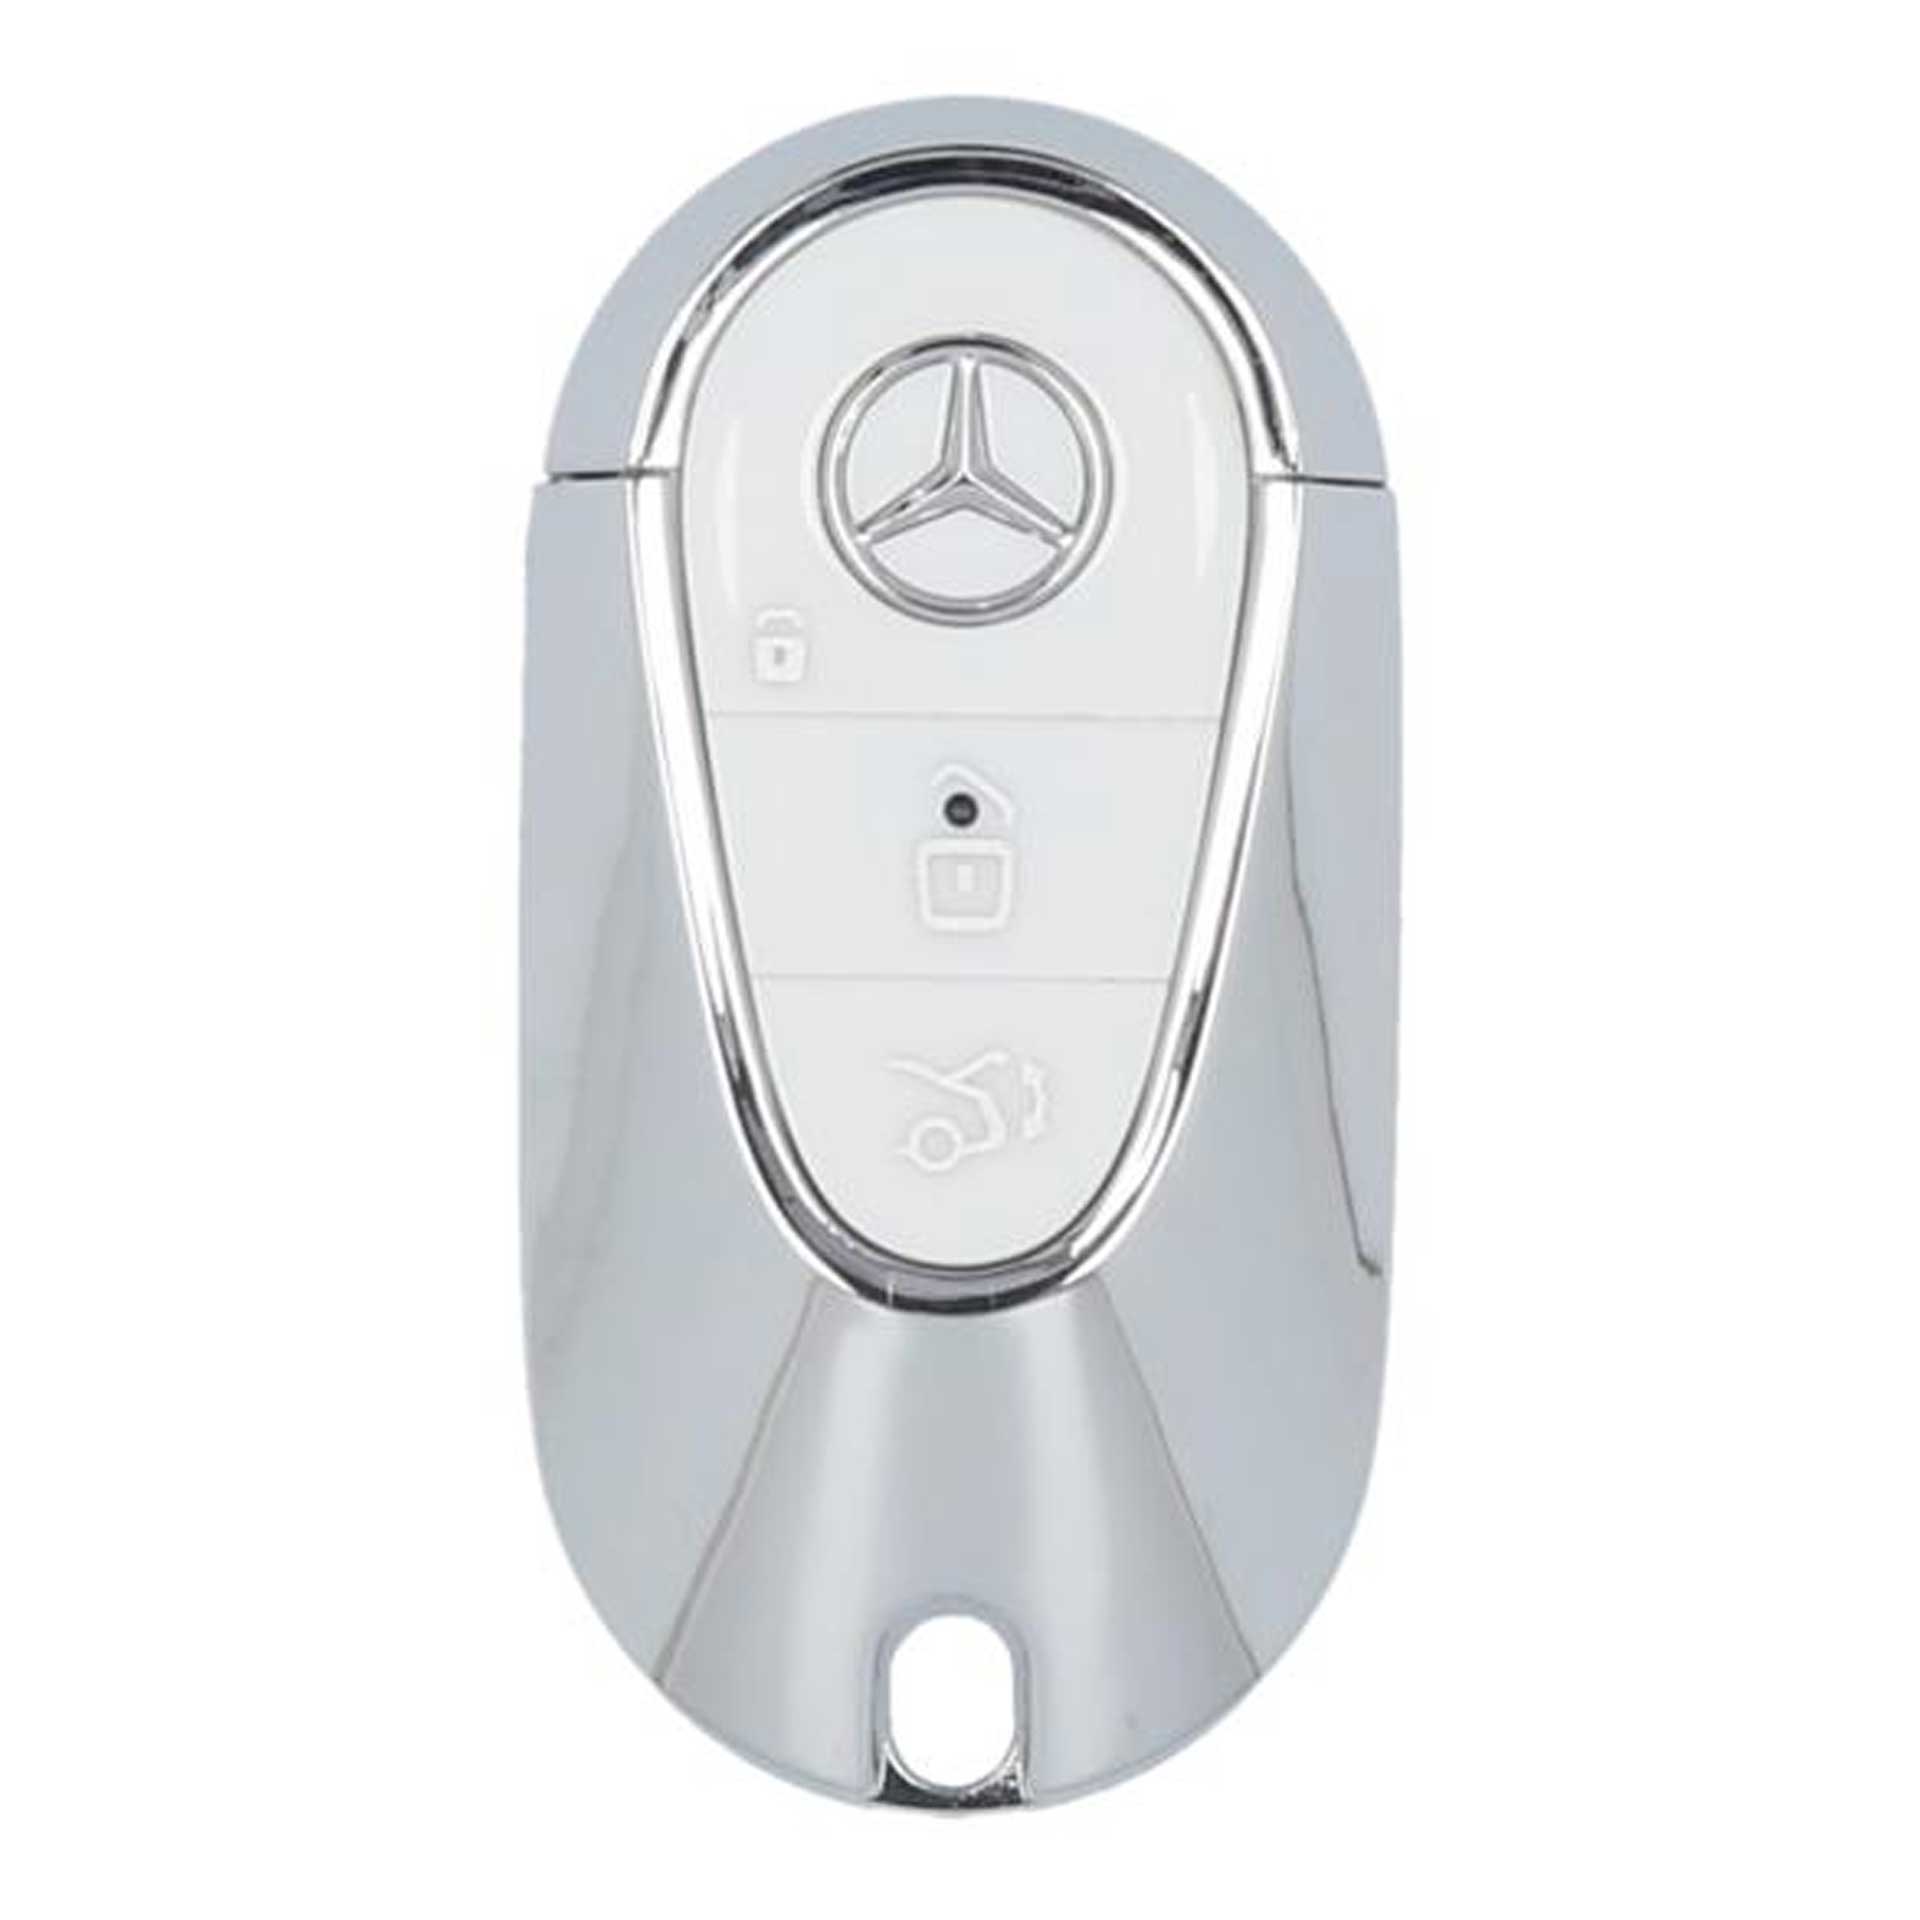 Mercedes-Benz USB-Stick in Schlüsselform Gen. 7 32 GB USB 3.0 weiß/chrom